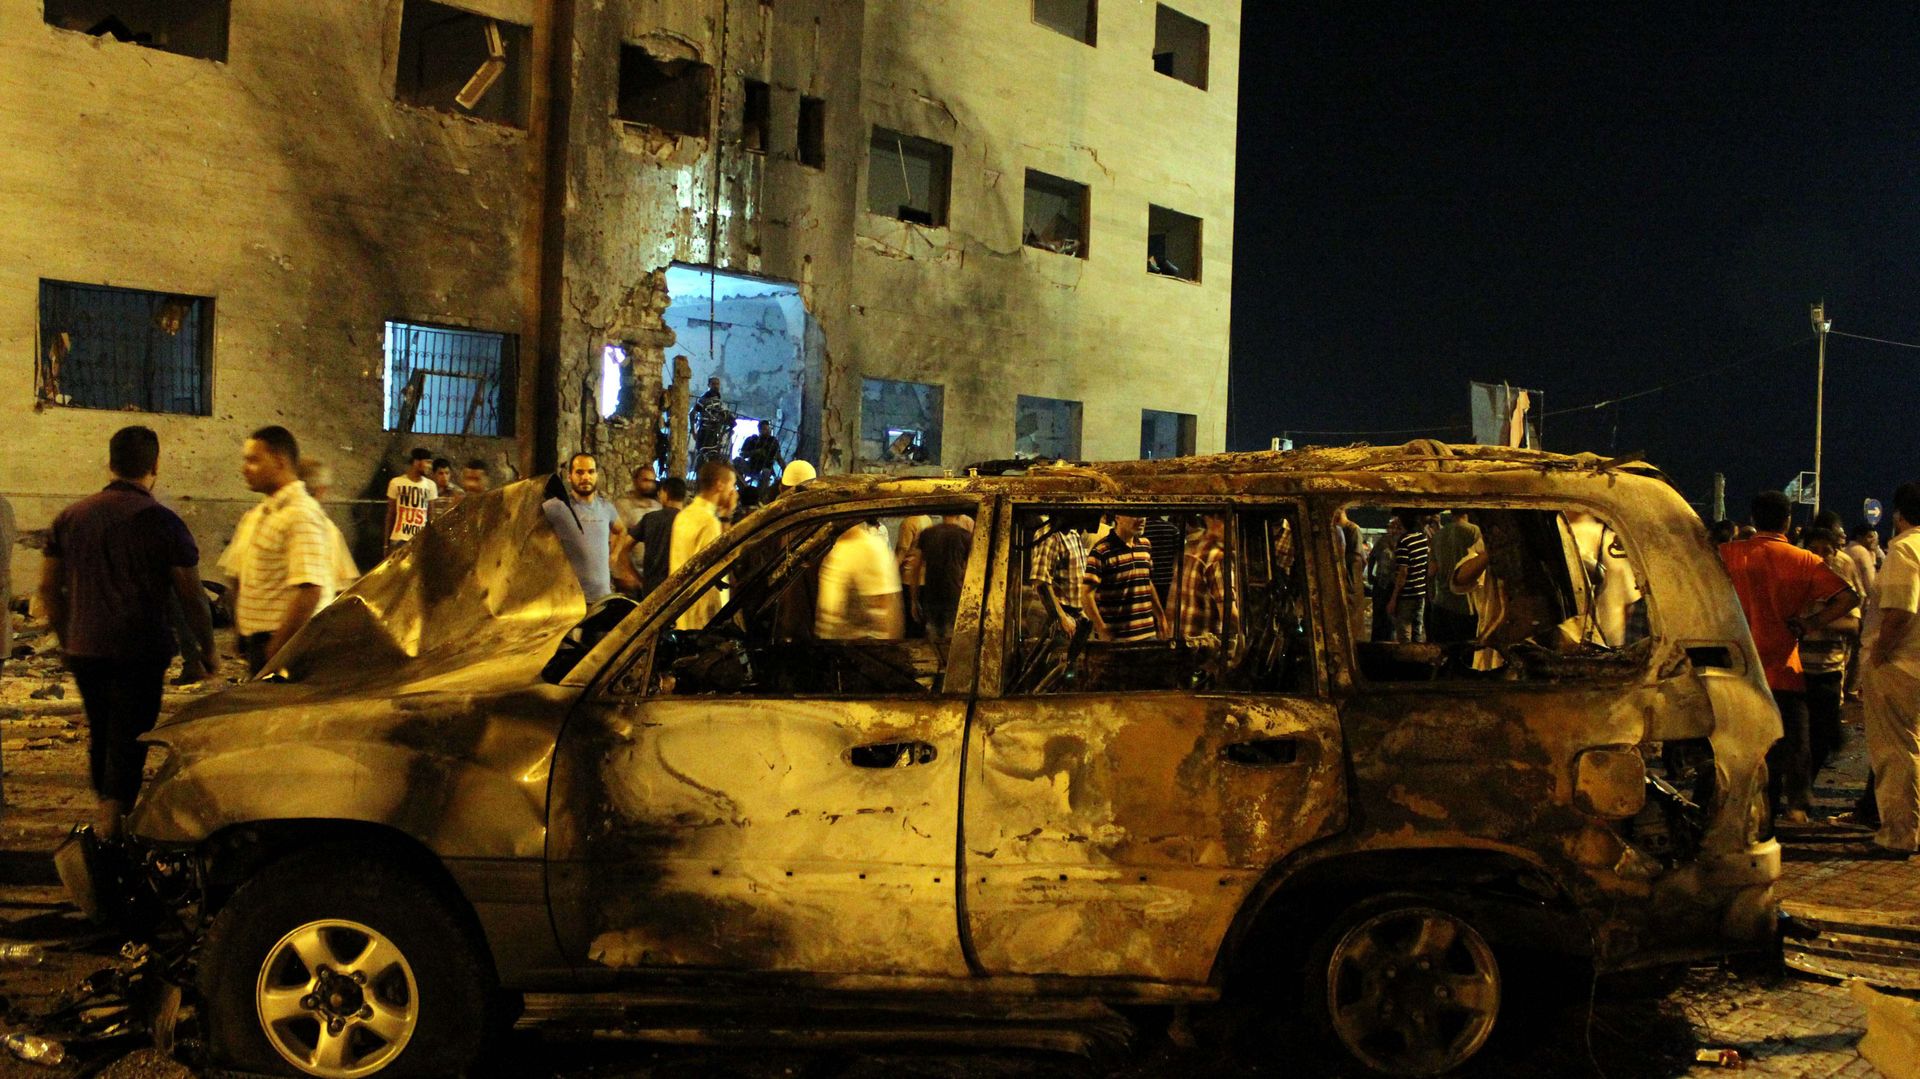 A Benghazi en Lybie, deux explosions puissantes ont rajouté à la tension croissante